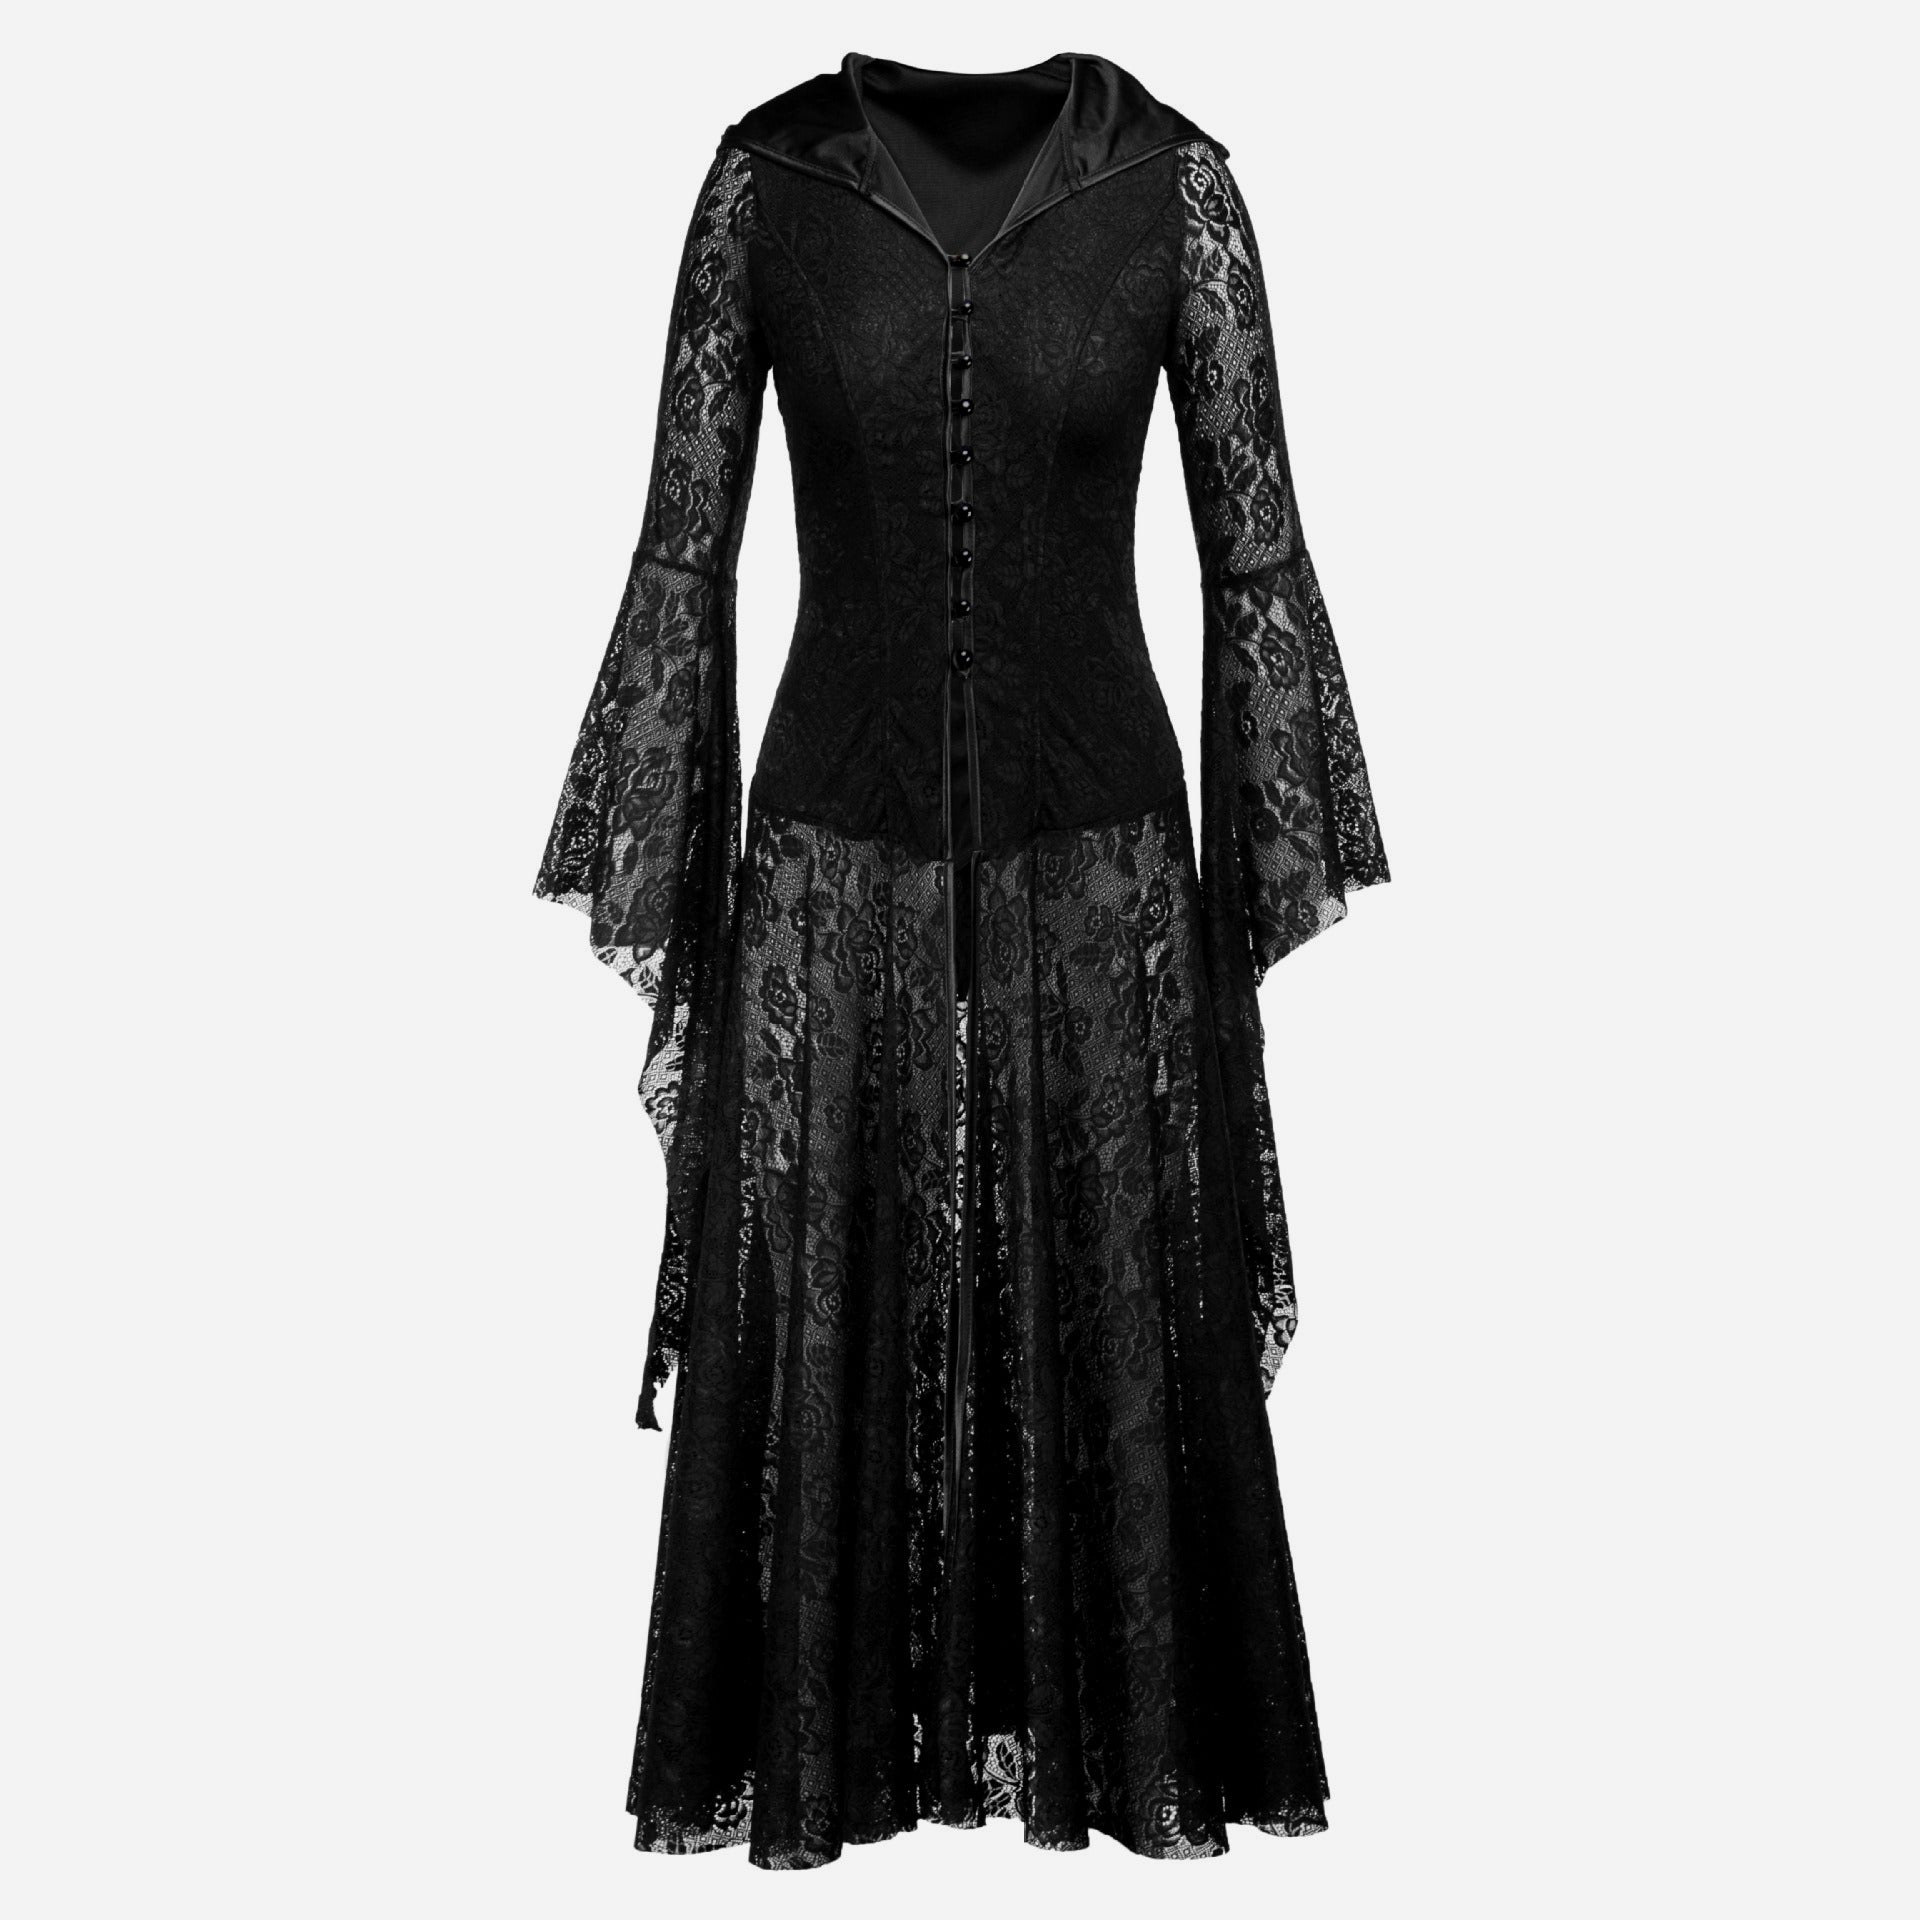 Womens Black Lace Medieval Renaissance Dress